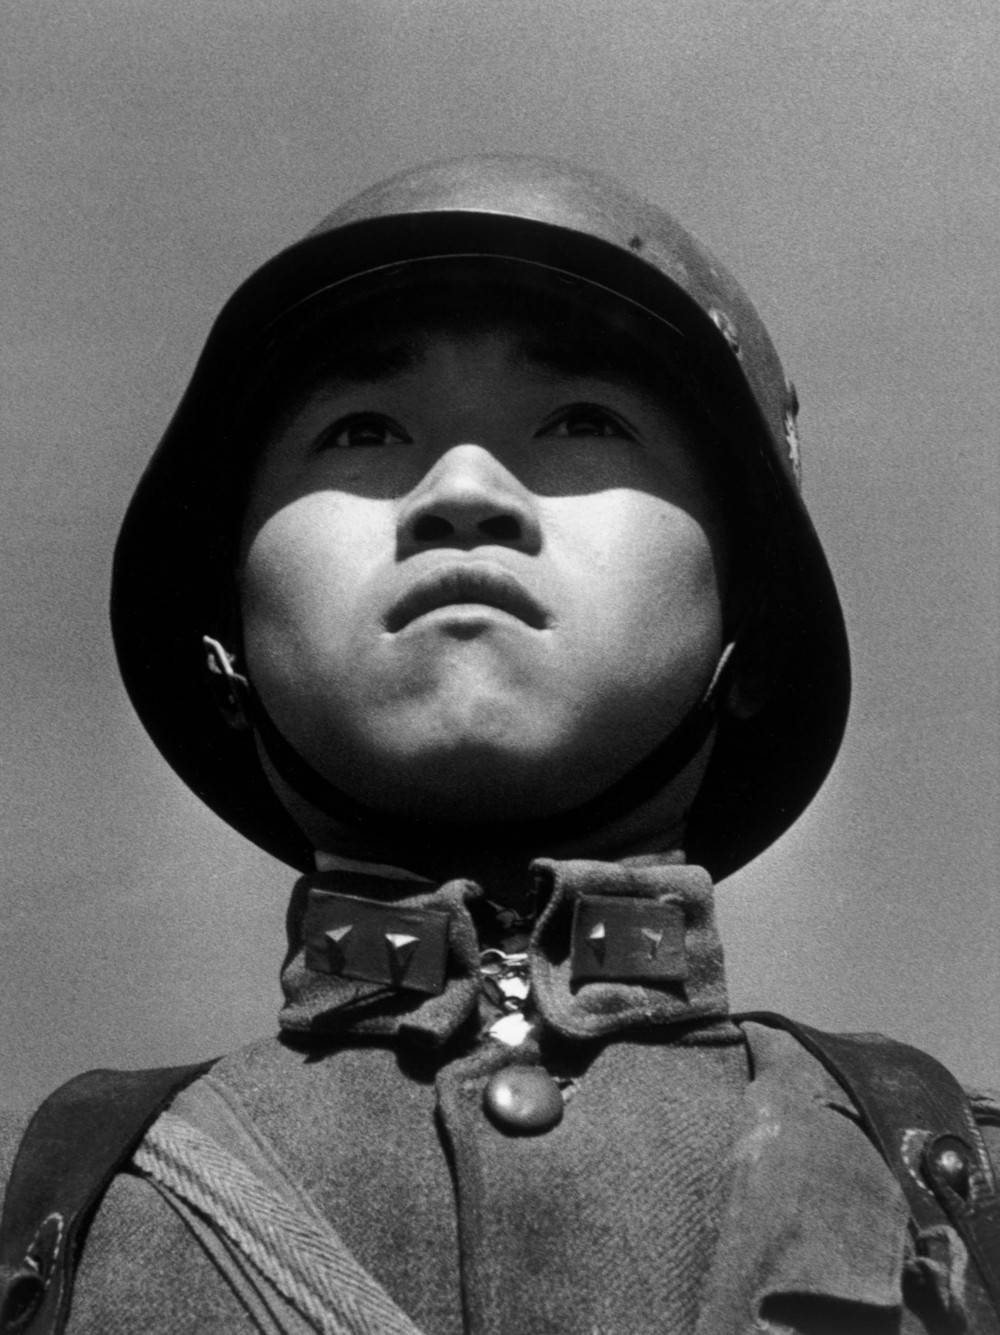 파일:external/www.filmsnotdead.com/08.Boy-SoldierChina1938jpg.jpg